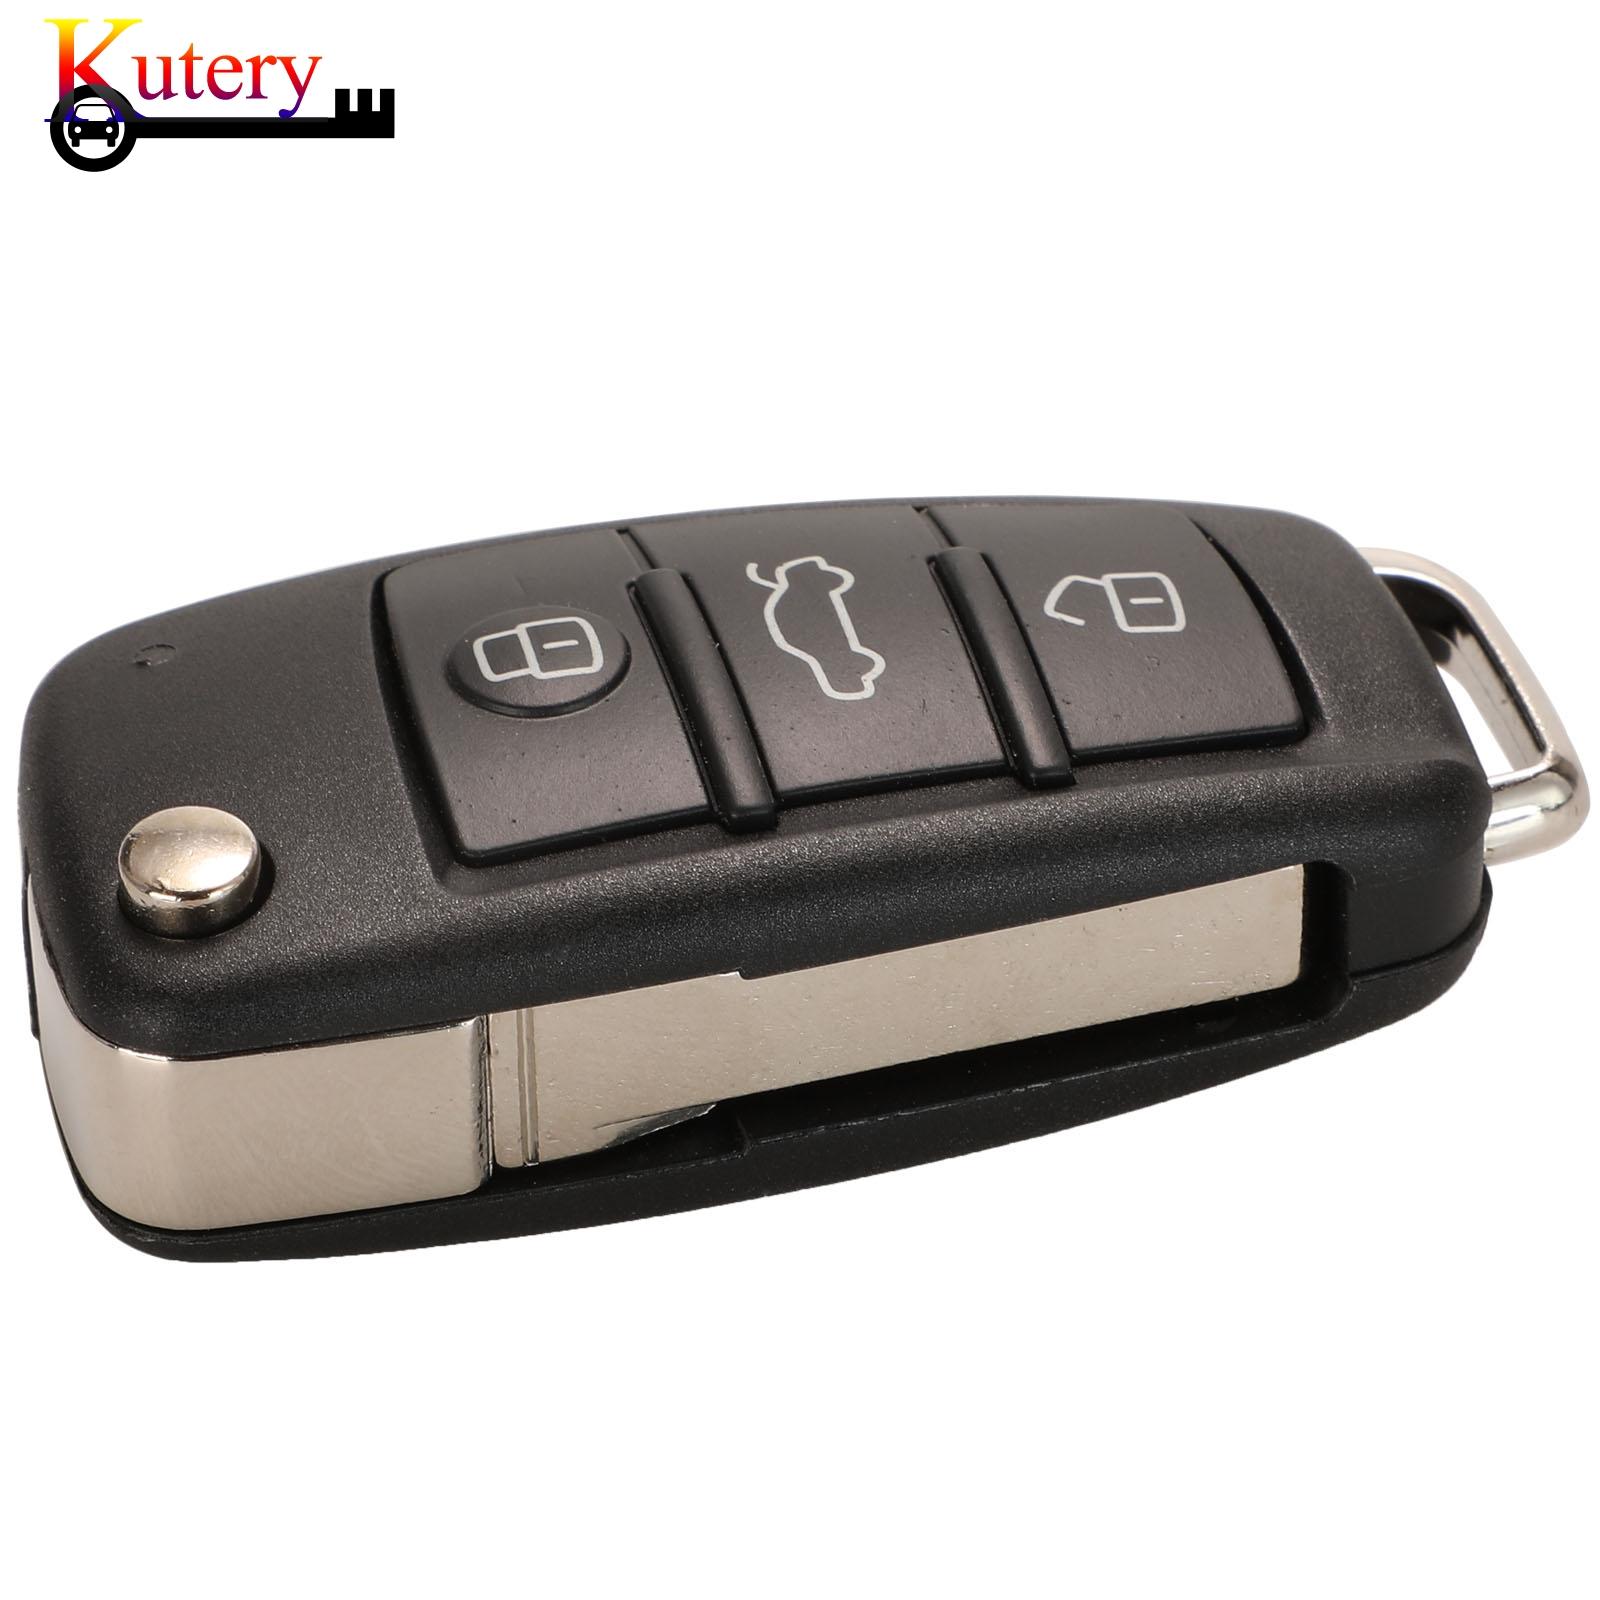 Изображение товара: Оригинальный складной дистанционный ключ Kutery для автомобиля Audi A6L Q7, 3 кнопки, чип 8E, 868 МГц, модуляция FSK, 4F0837220R/AD